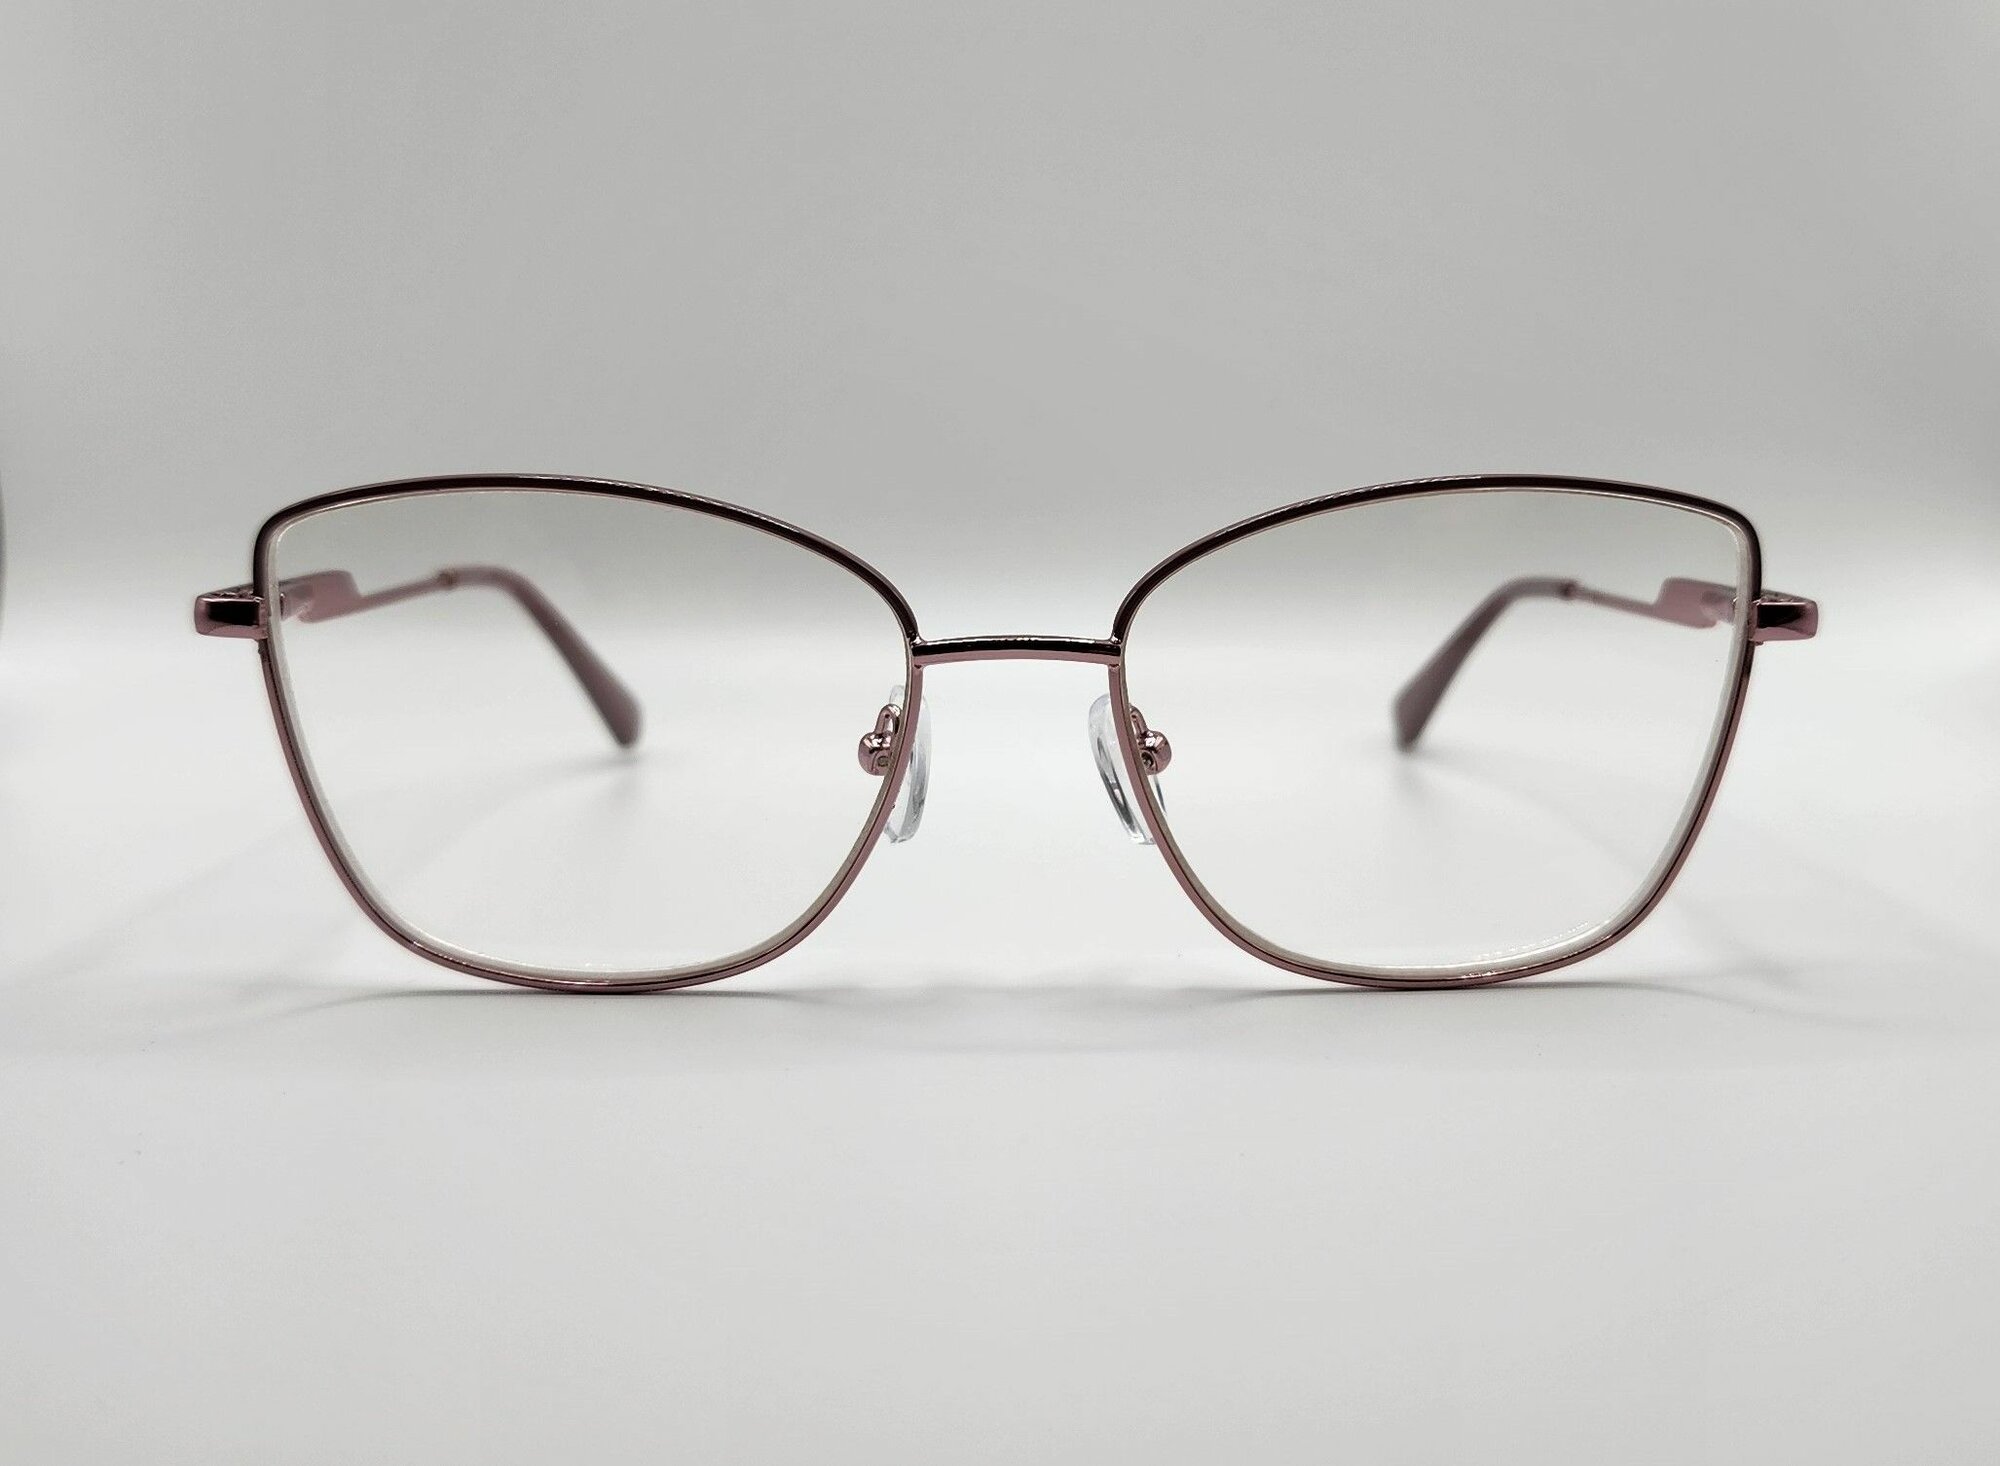 Готовые очки для зрения с фотохромными линзами "хамелеон" блю-блокер женские PЦ 62-64 мм, -0.75